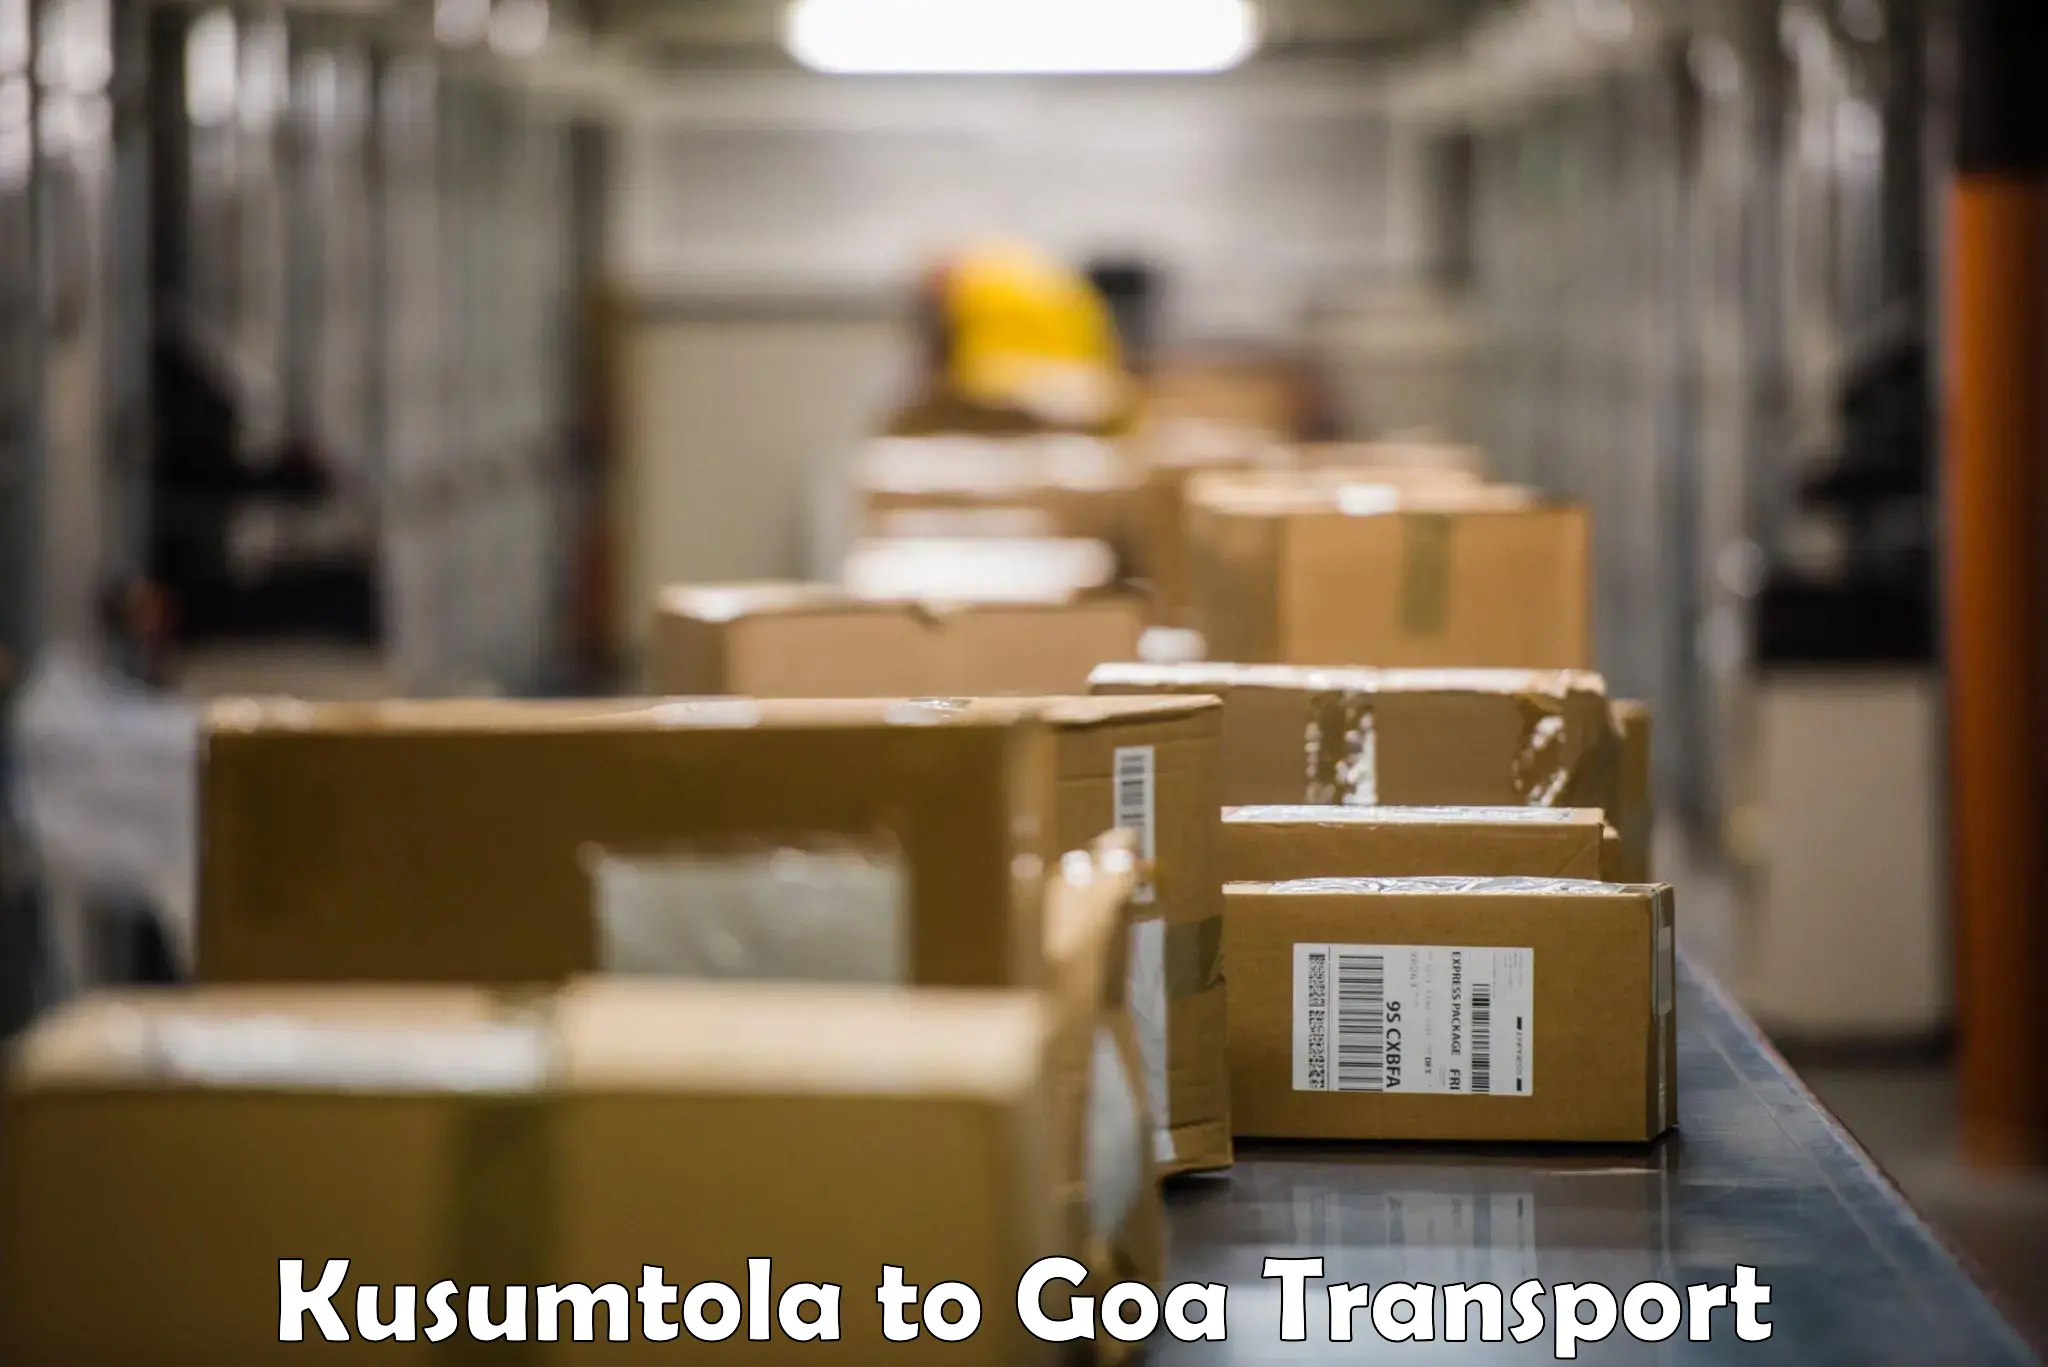 Sending bike to another city Kusumtola to IIT Goa